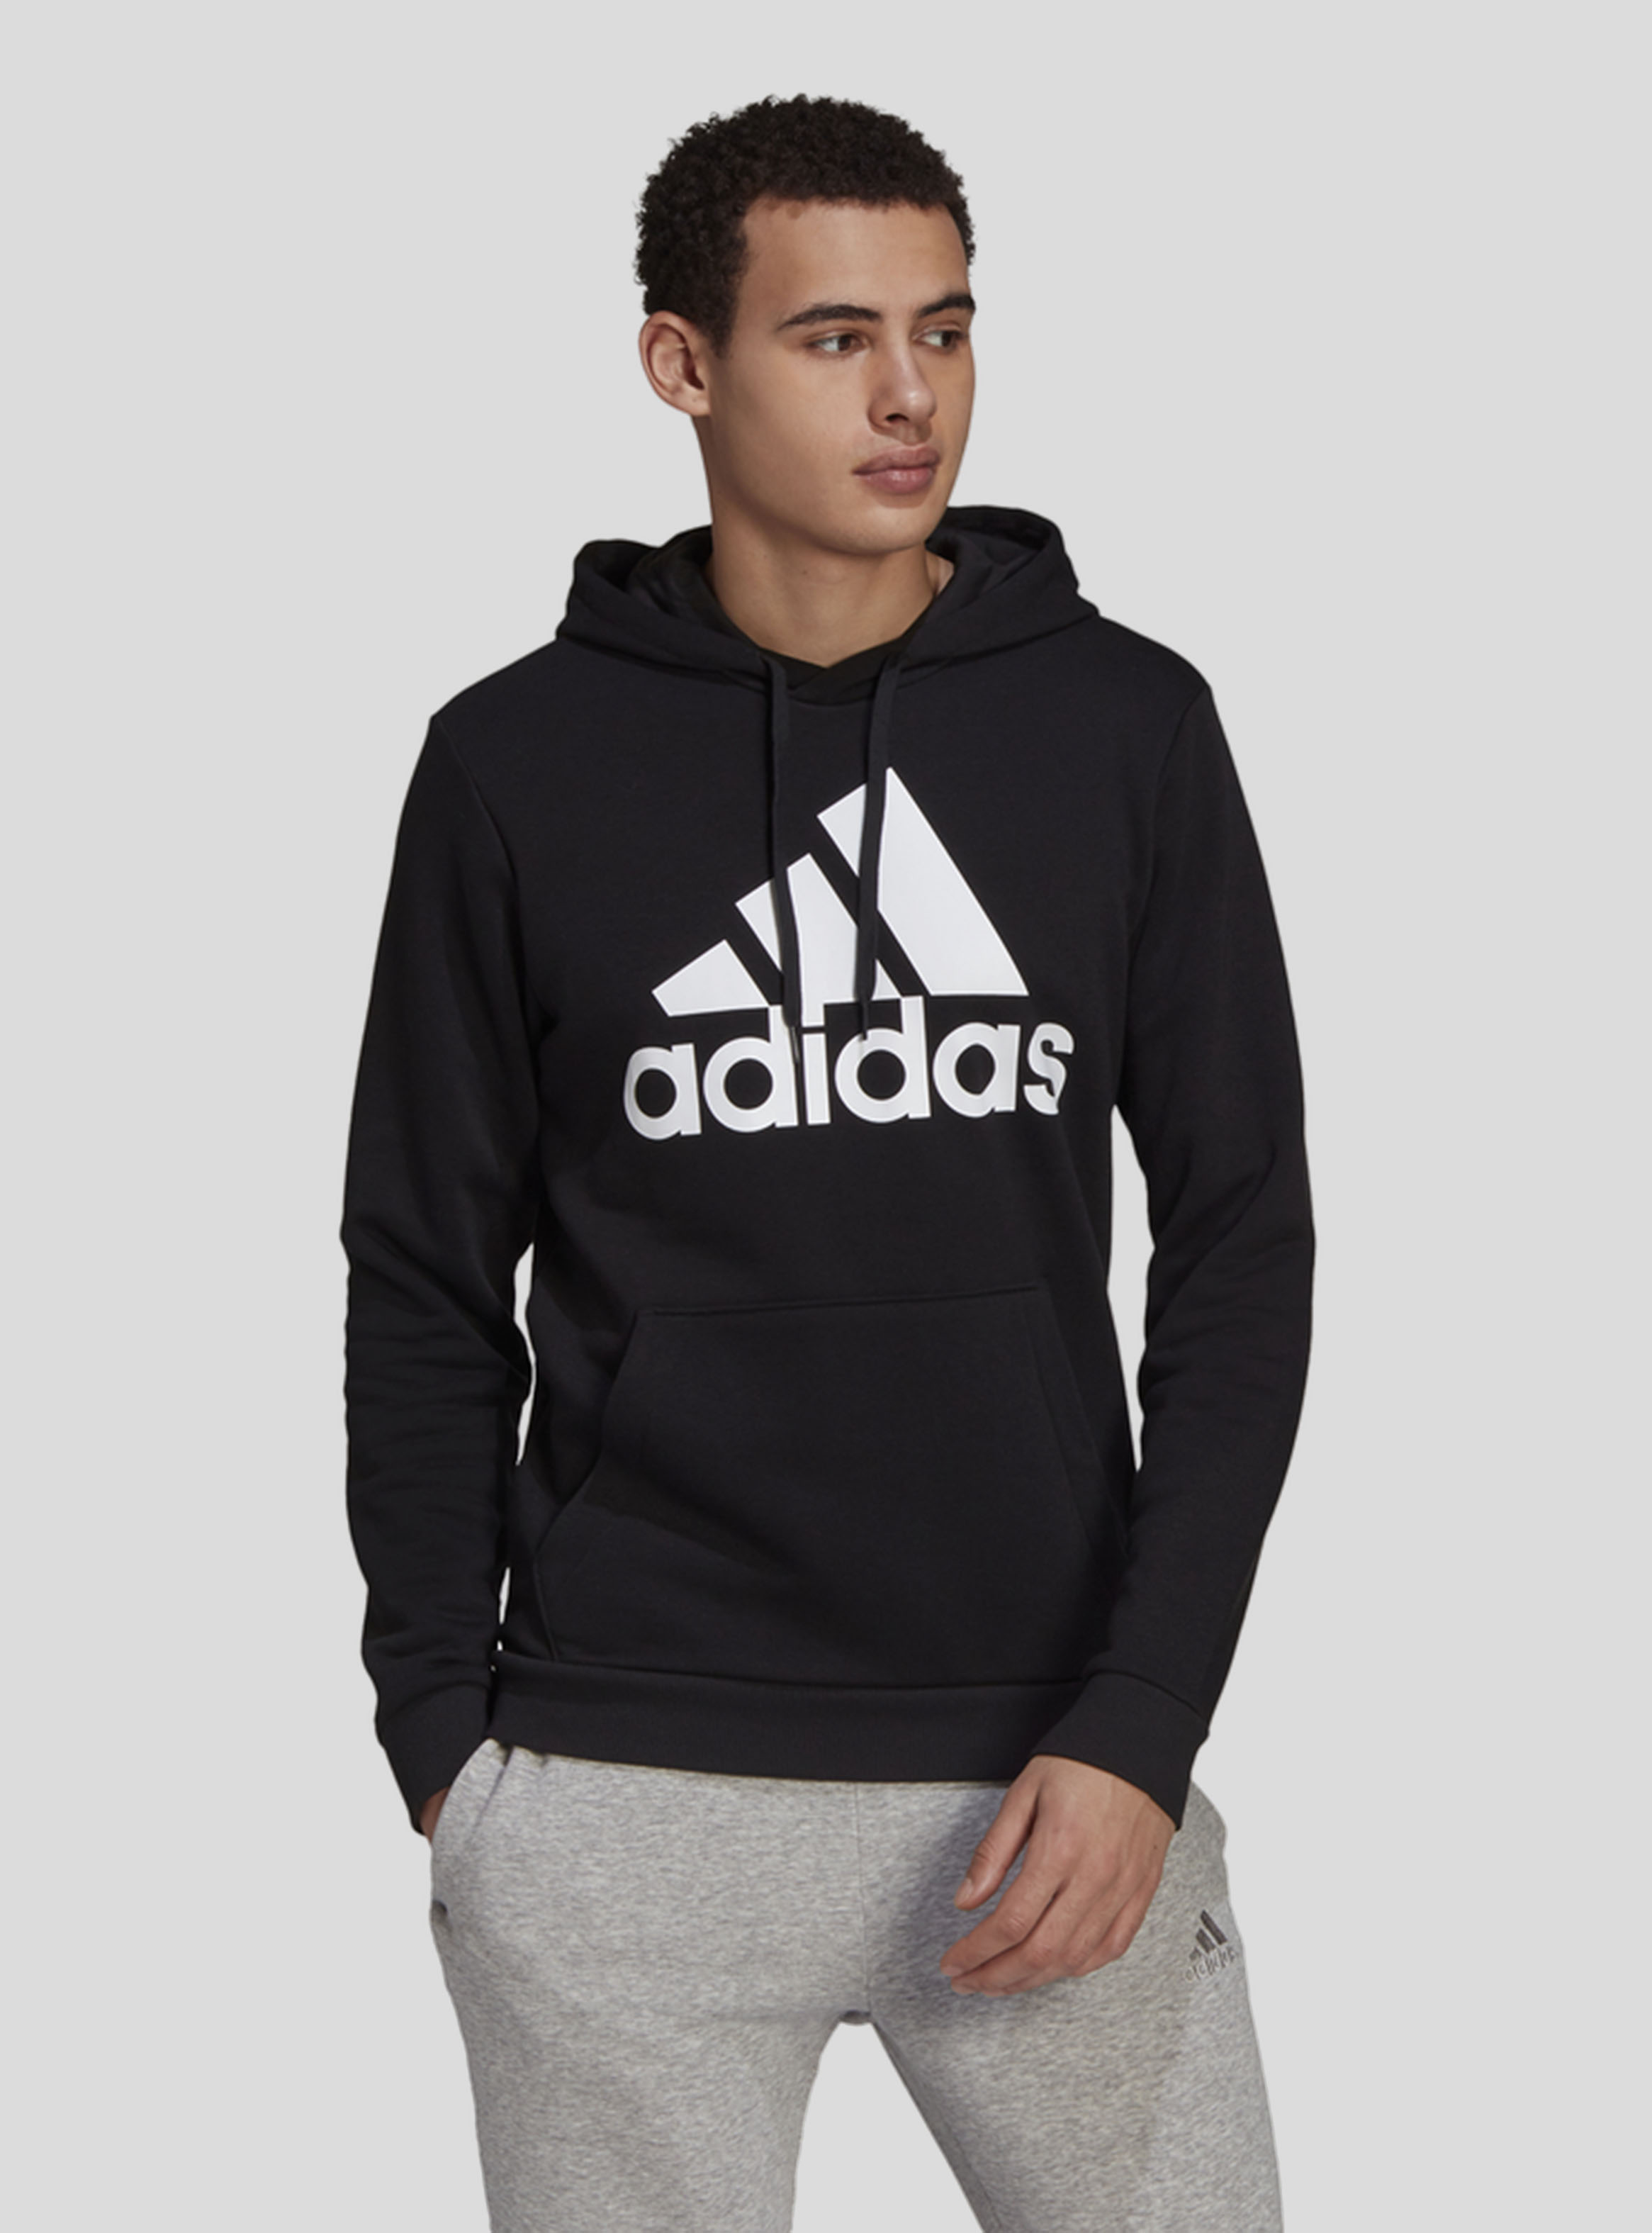 Adidas Essentials Fleece Big Logo Negro Hombre - Polerones Polar | Paris.cl